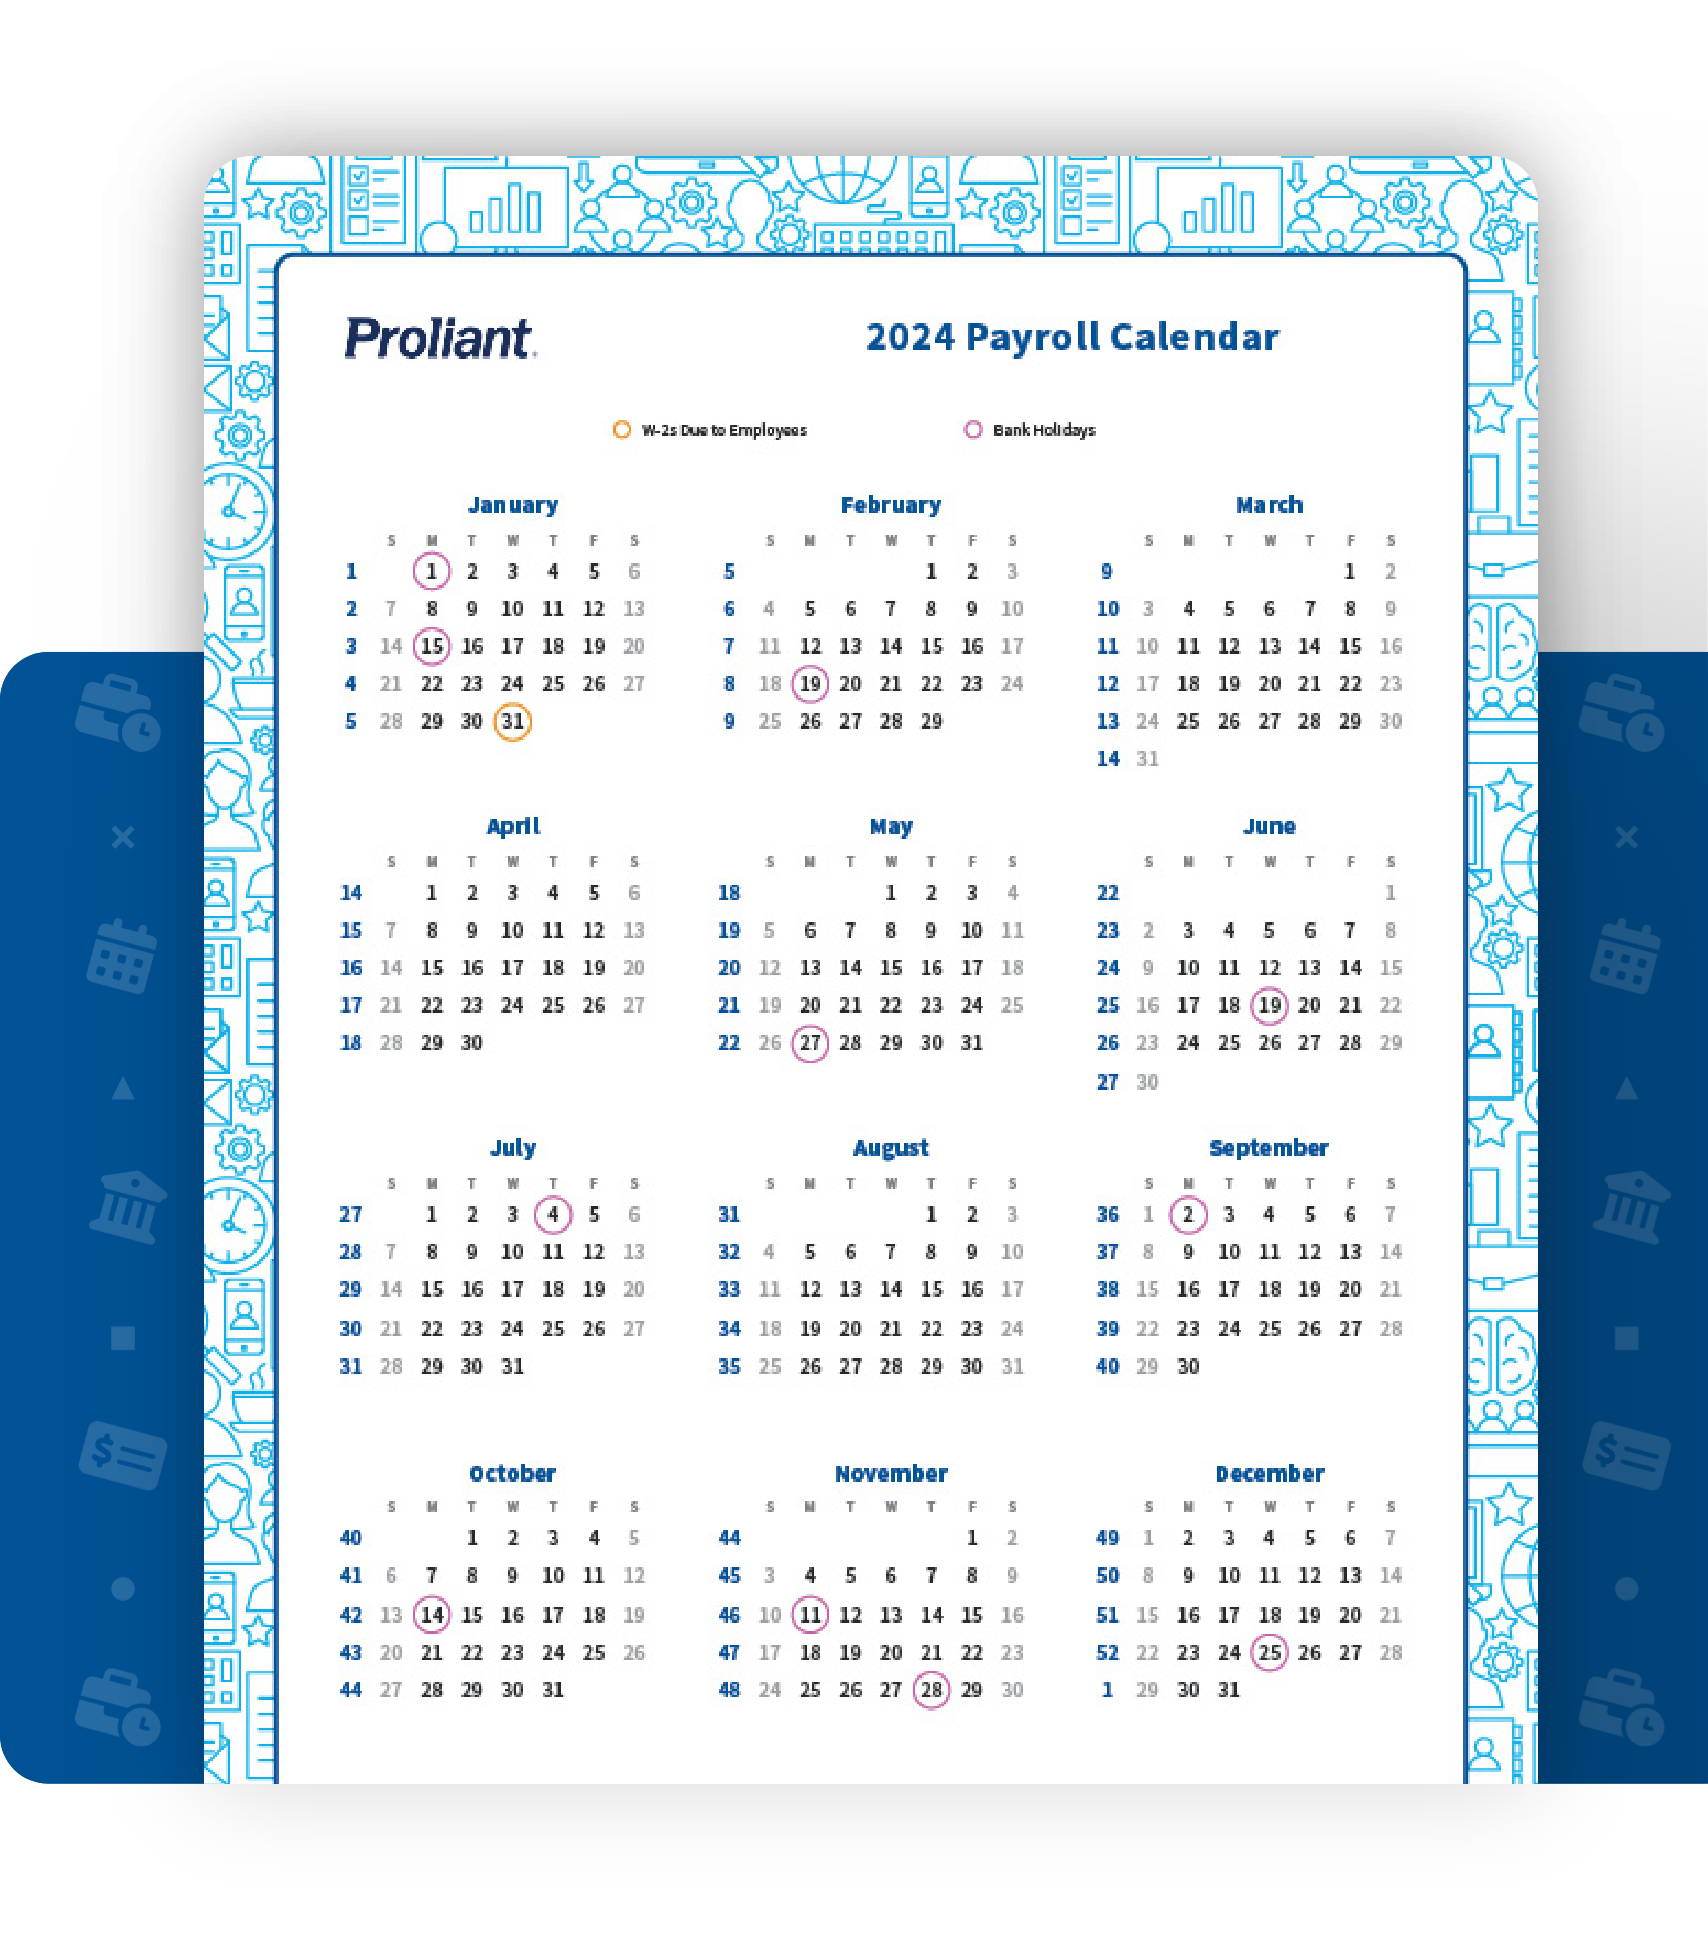 proliant-payroll-banking-holiday-calendar-mockup